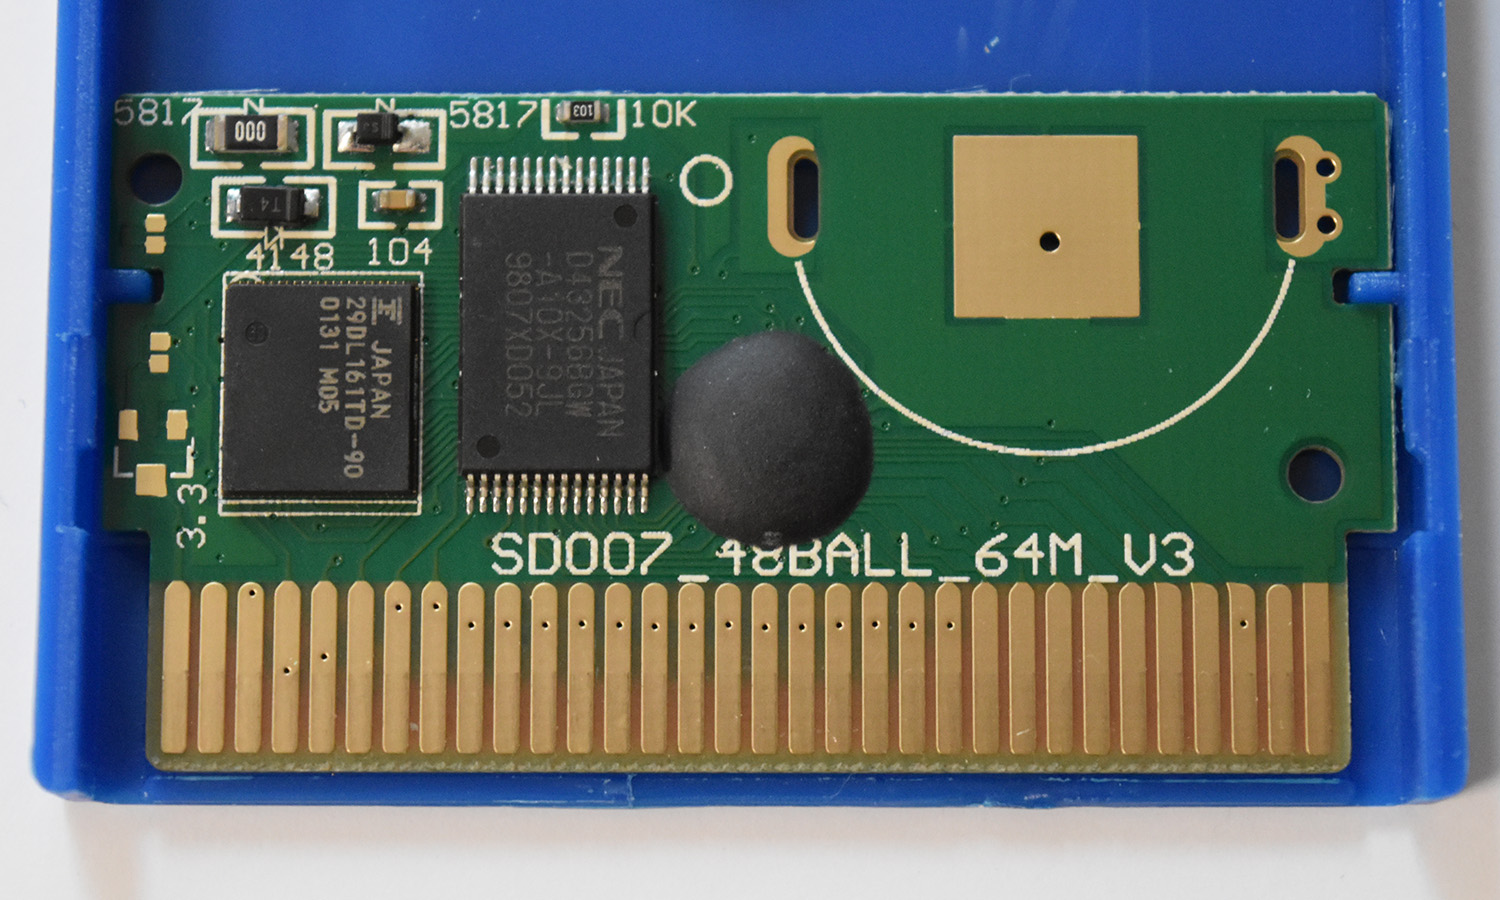 SD007 48BALL 64M V3 - 29DL161TD-90 (Pokémon Blue).jpg